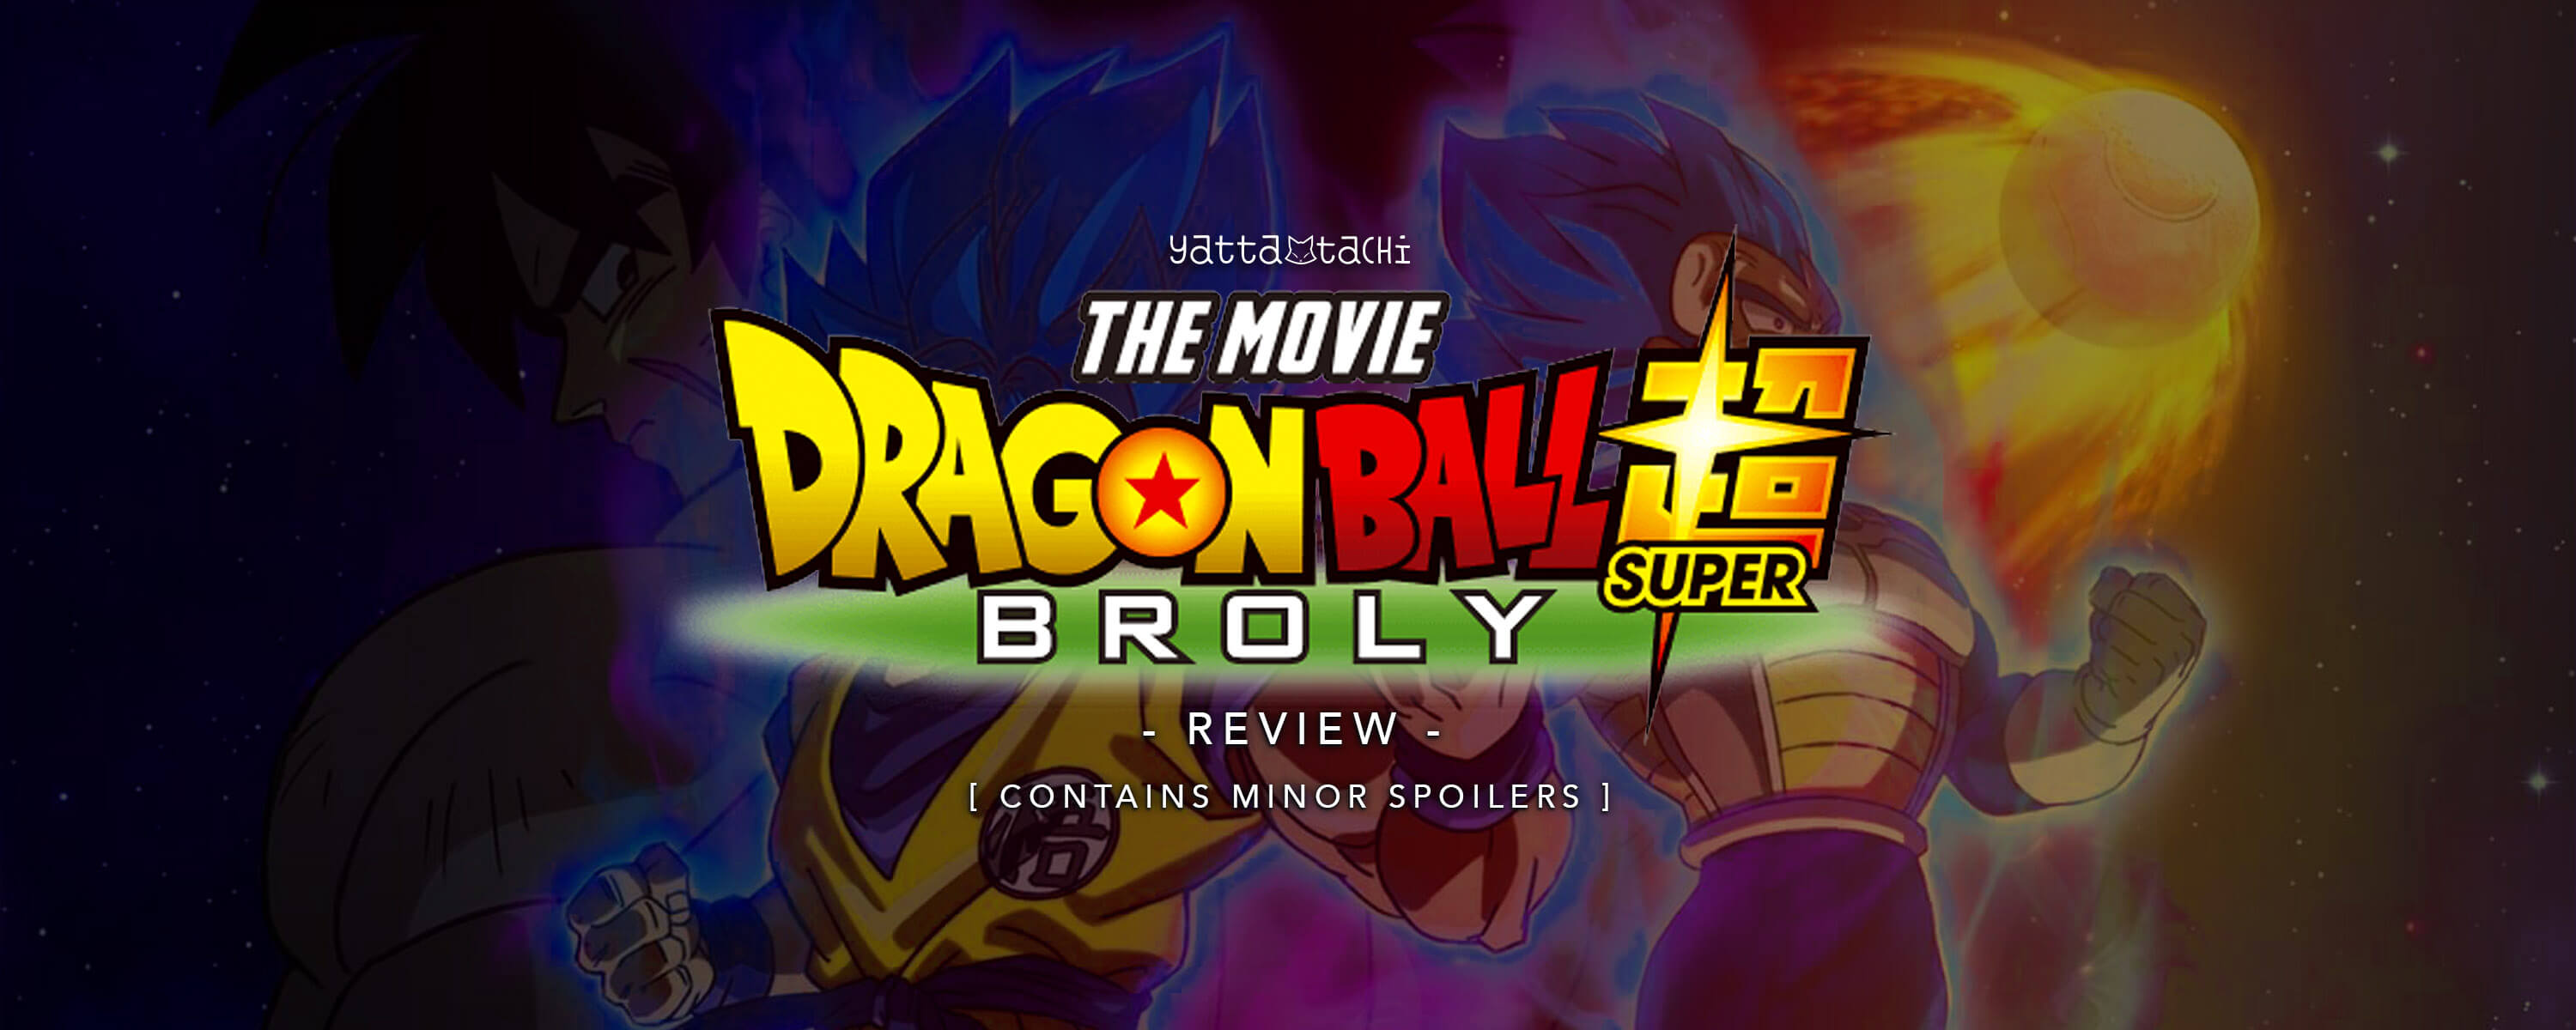 Stream Blizzard - Música Tema de Dragon Ball Super: Broly(Versão